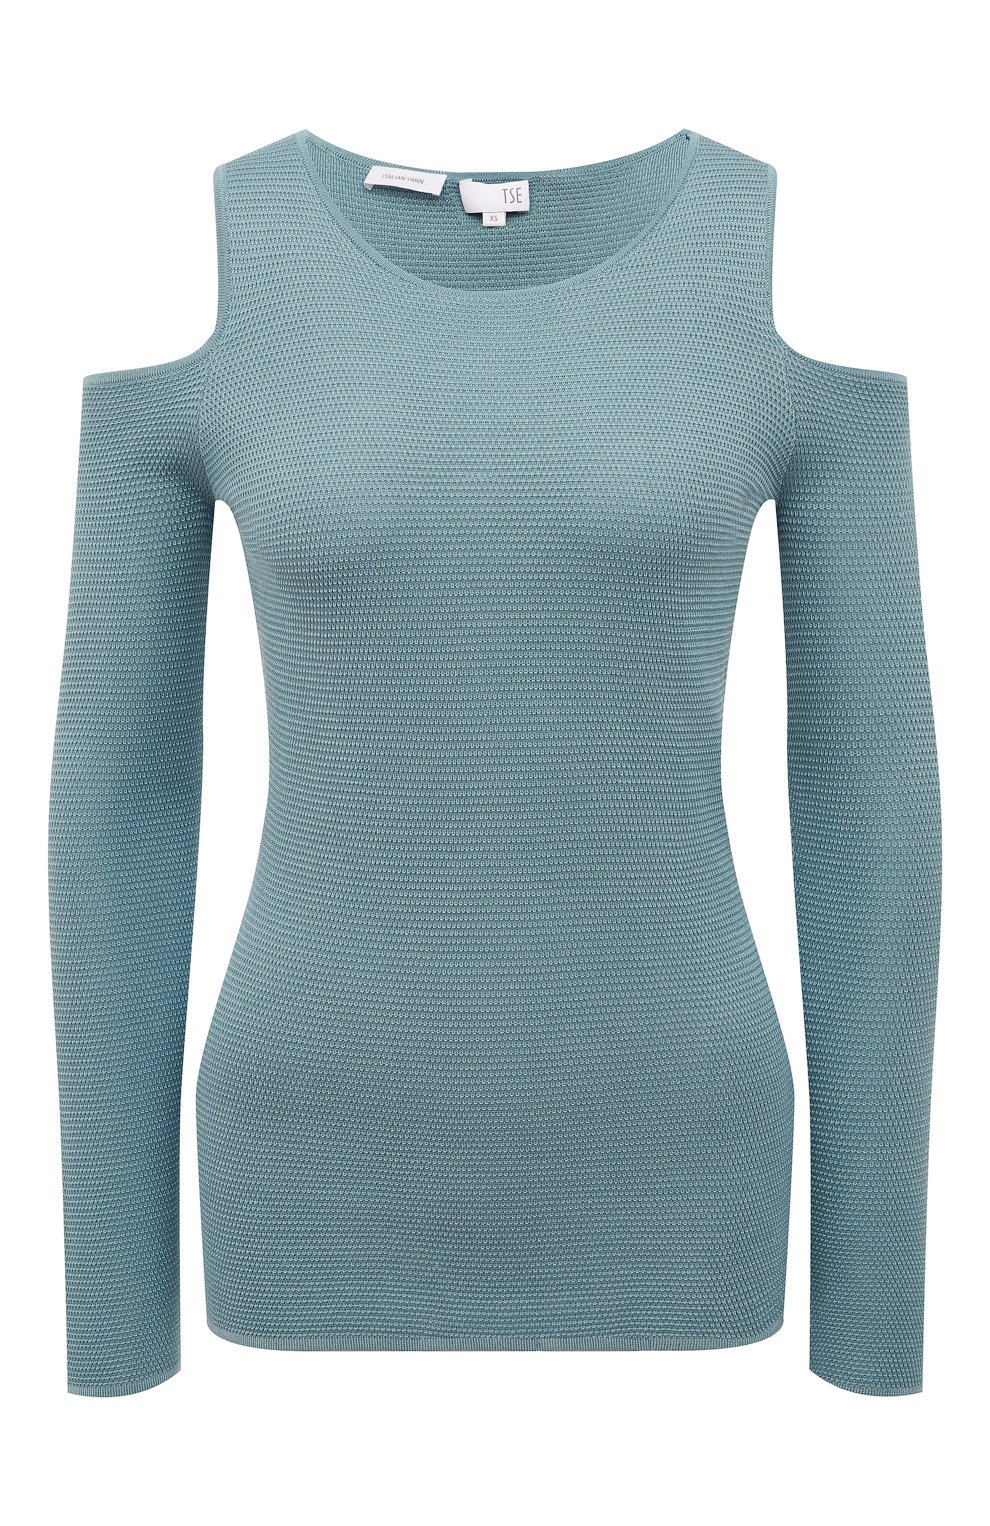 Трикотаж Tse, Шелковый пуловер с разрезами на плечах Tse, Китай, Голубой, Шелк: 100%;, 2950576  - купить